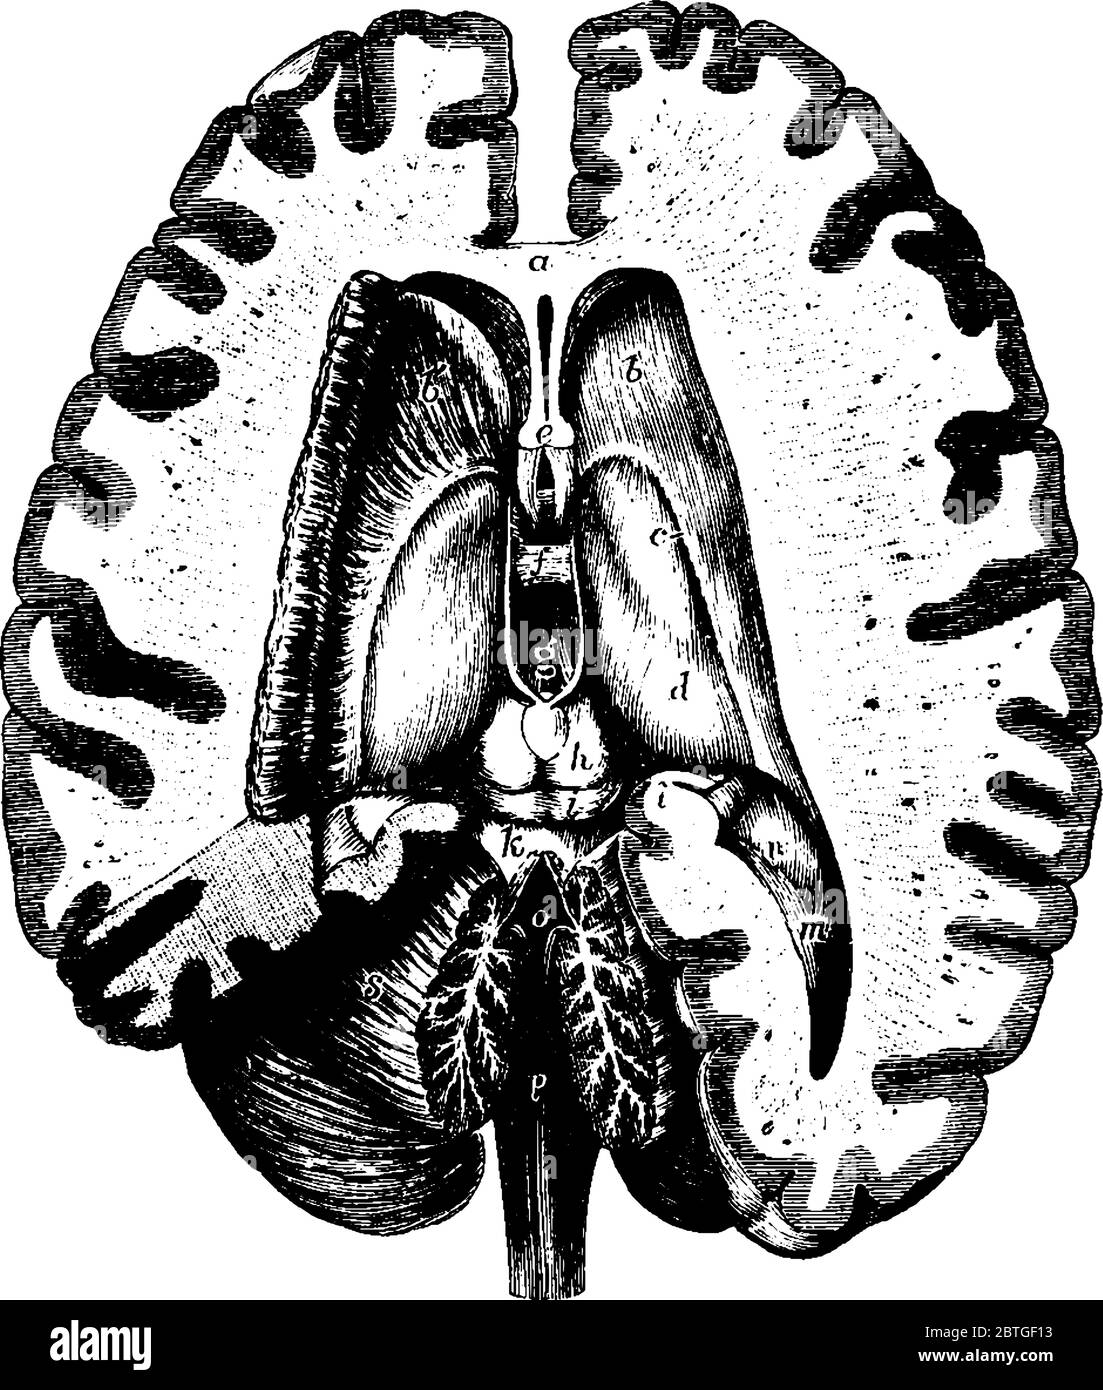 Diagramm des transversalen Abschnitts des mittleren Teils des Gehirns, der laterale, dritte und vierte Ventrikel zeigt, Vintage-Linienzeichnung oder Gravur Illustration. Stock Vektor